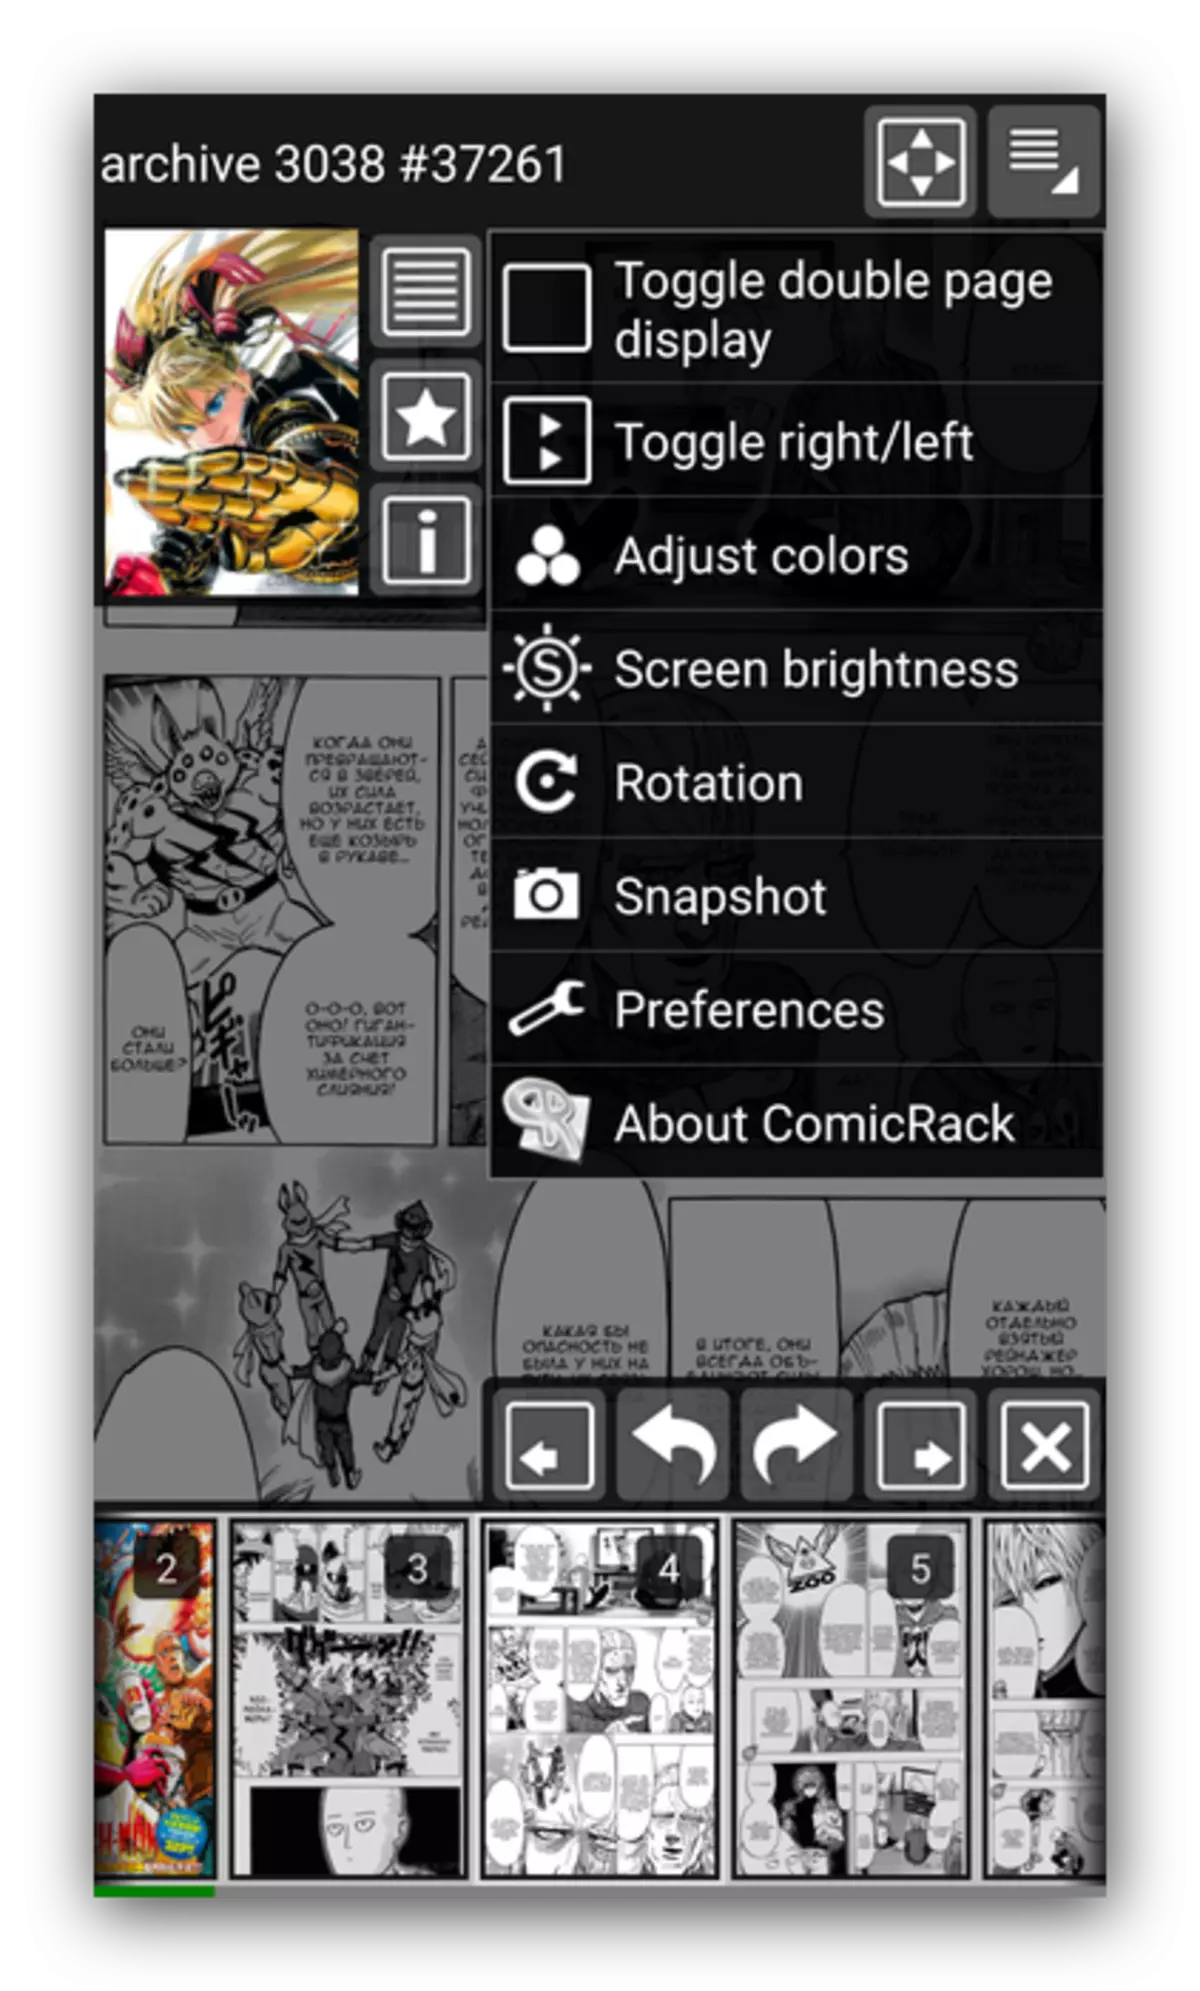 Manga Umusomyi wa Android Comic Rack